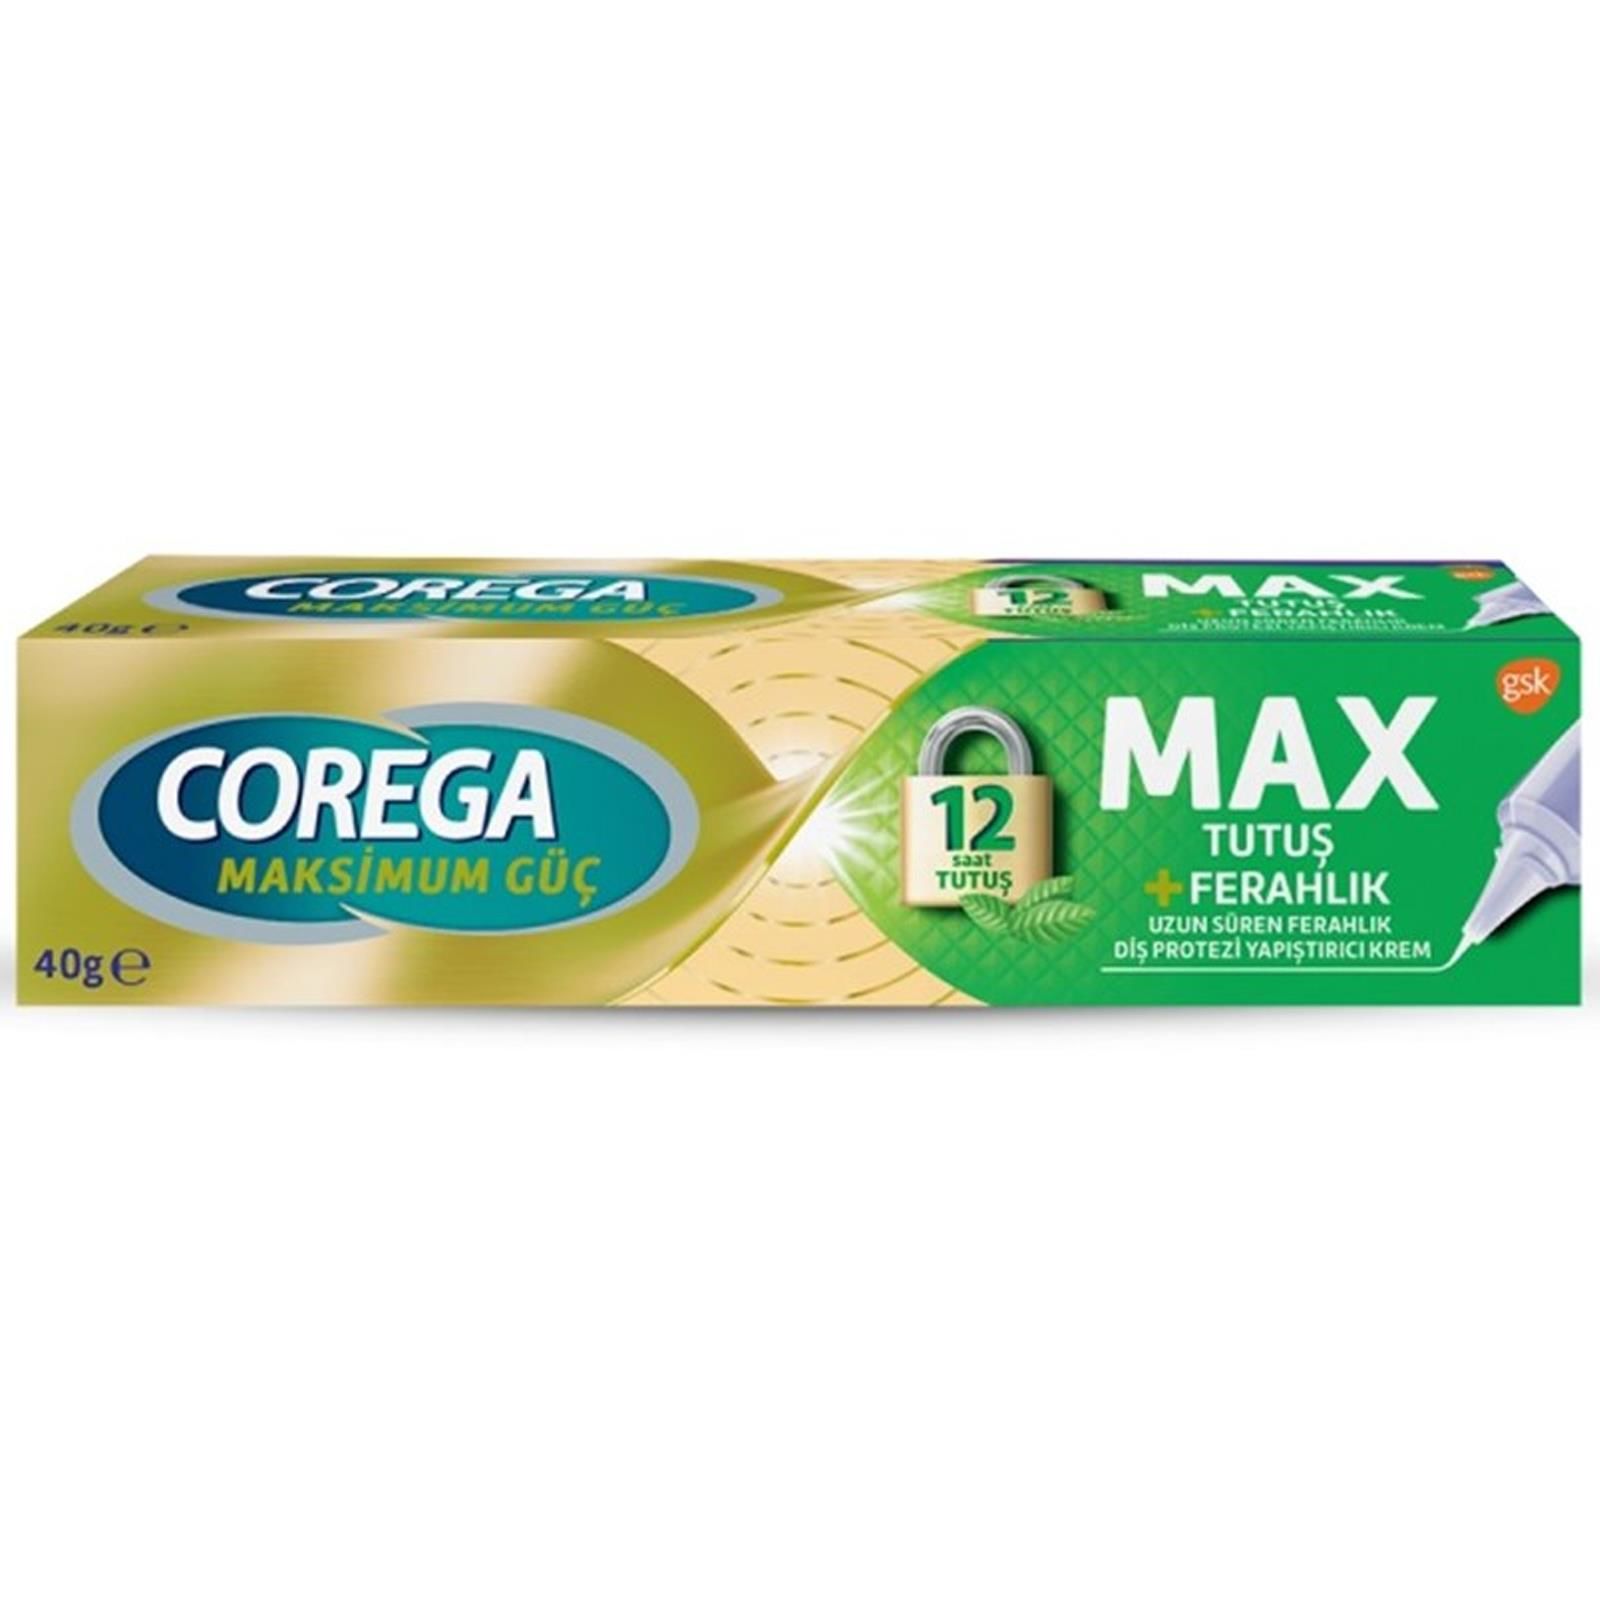 Corega Max Tutuş Ve Ferahlık Diş Protezi Yapıştırıcı Krem 40 gr